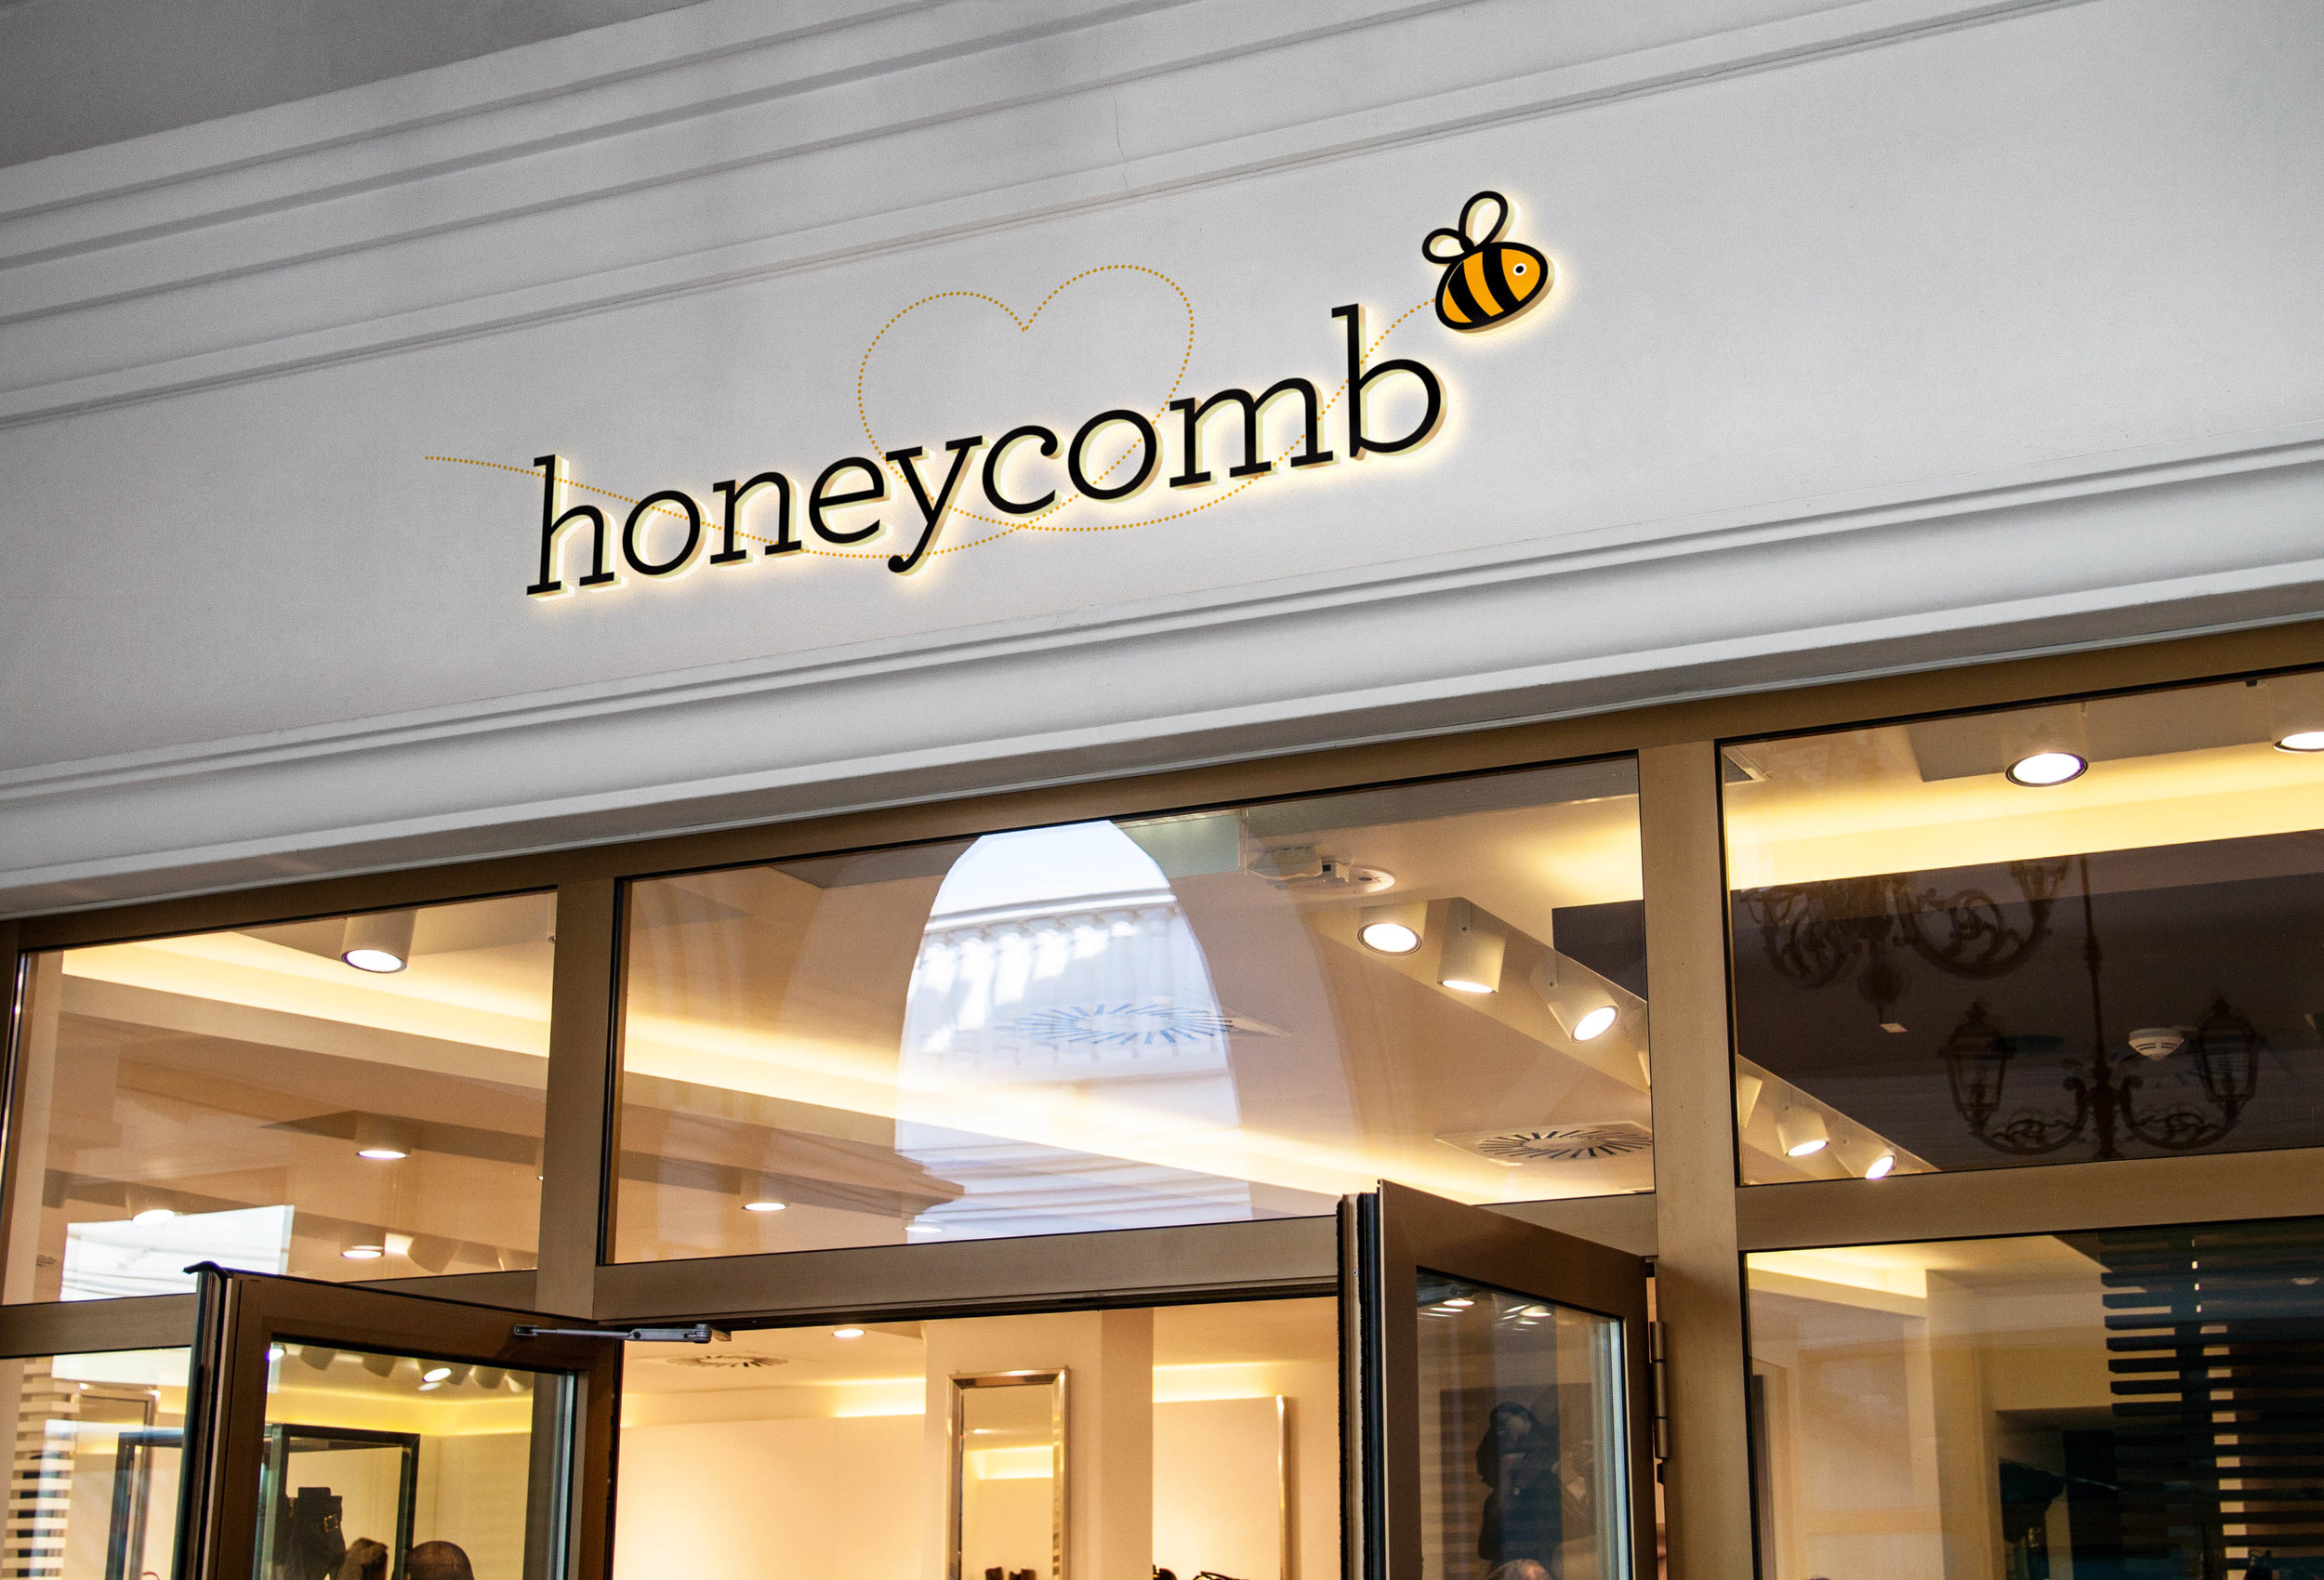 HoneycombLR.jpg